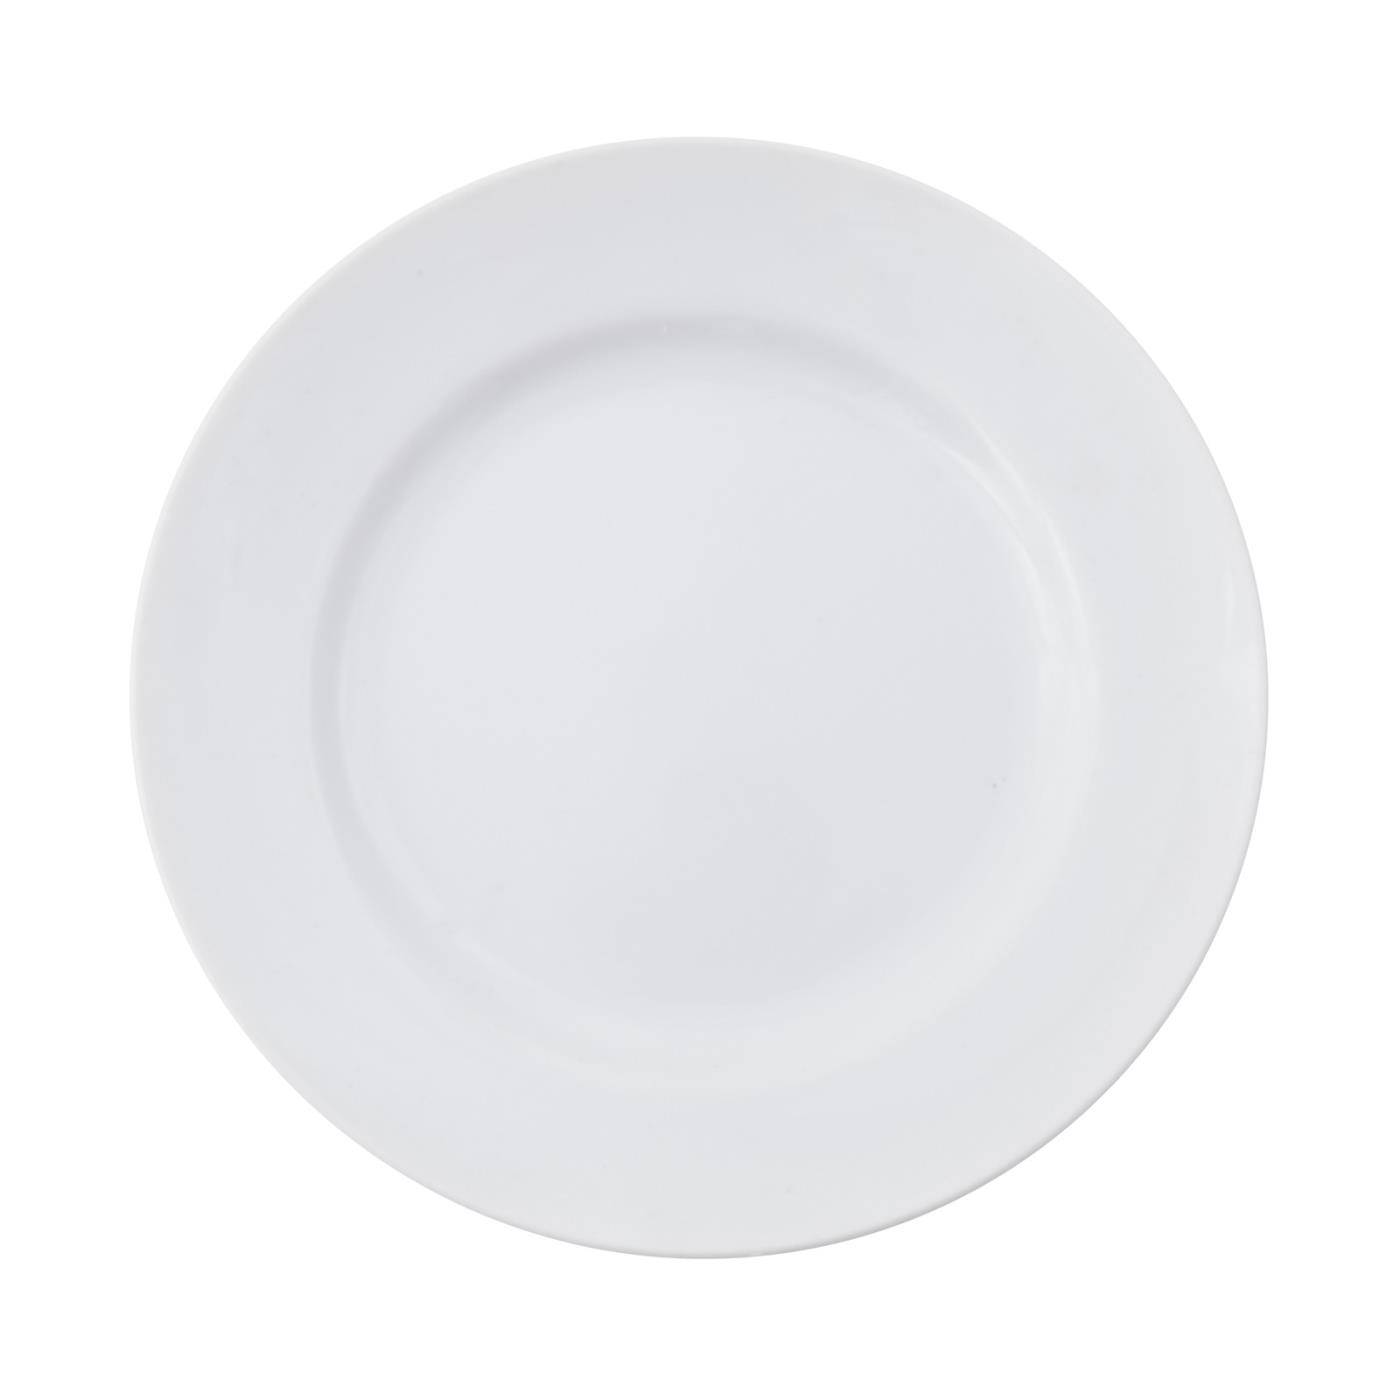 White Rim Collection -  White Rim Dessert Plate 7.5"